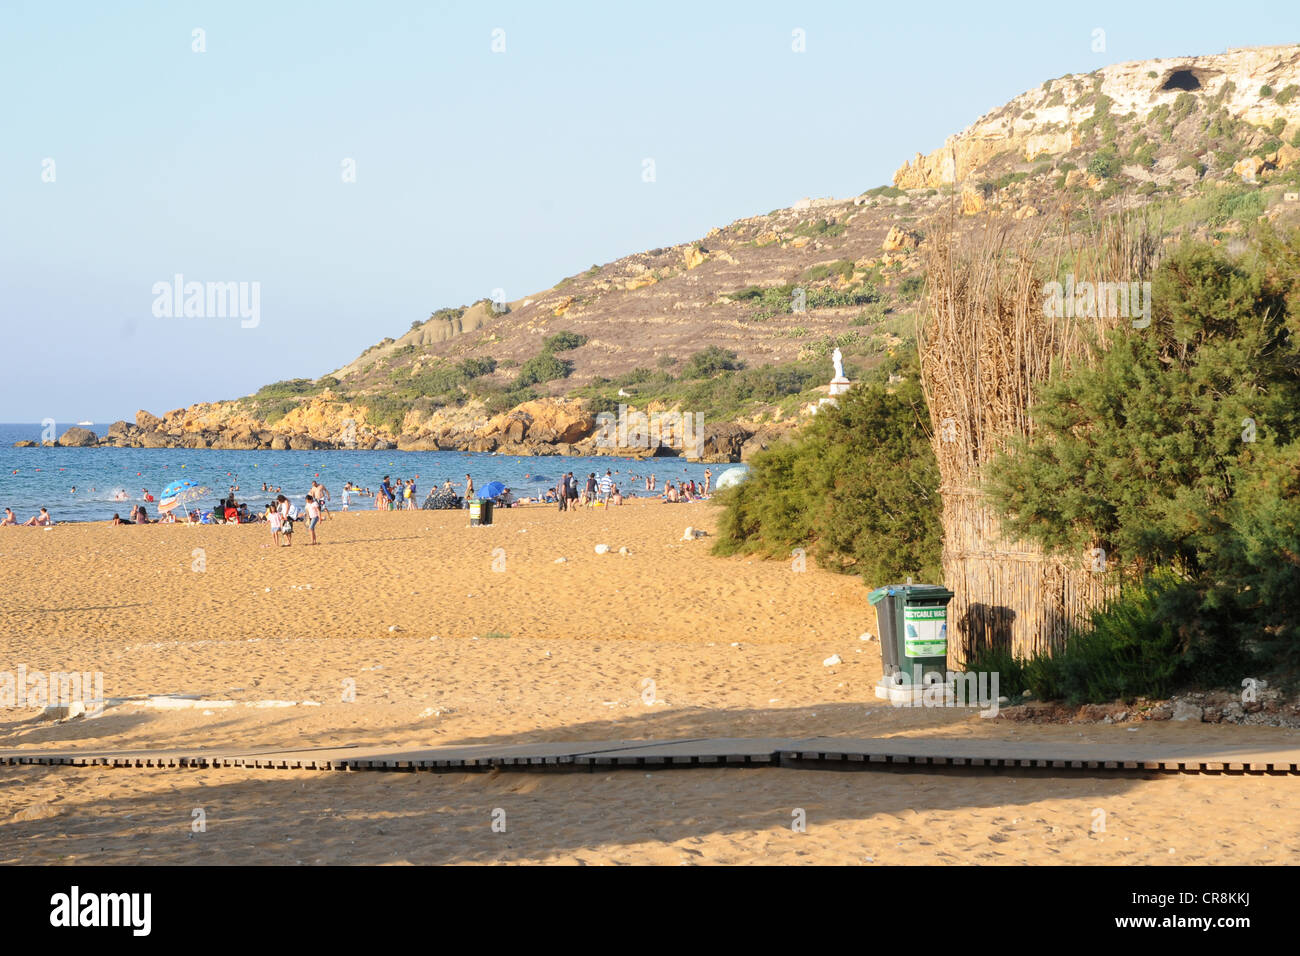 Sandy beach on the island of Gozo called Ramla. Stock Photo